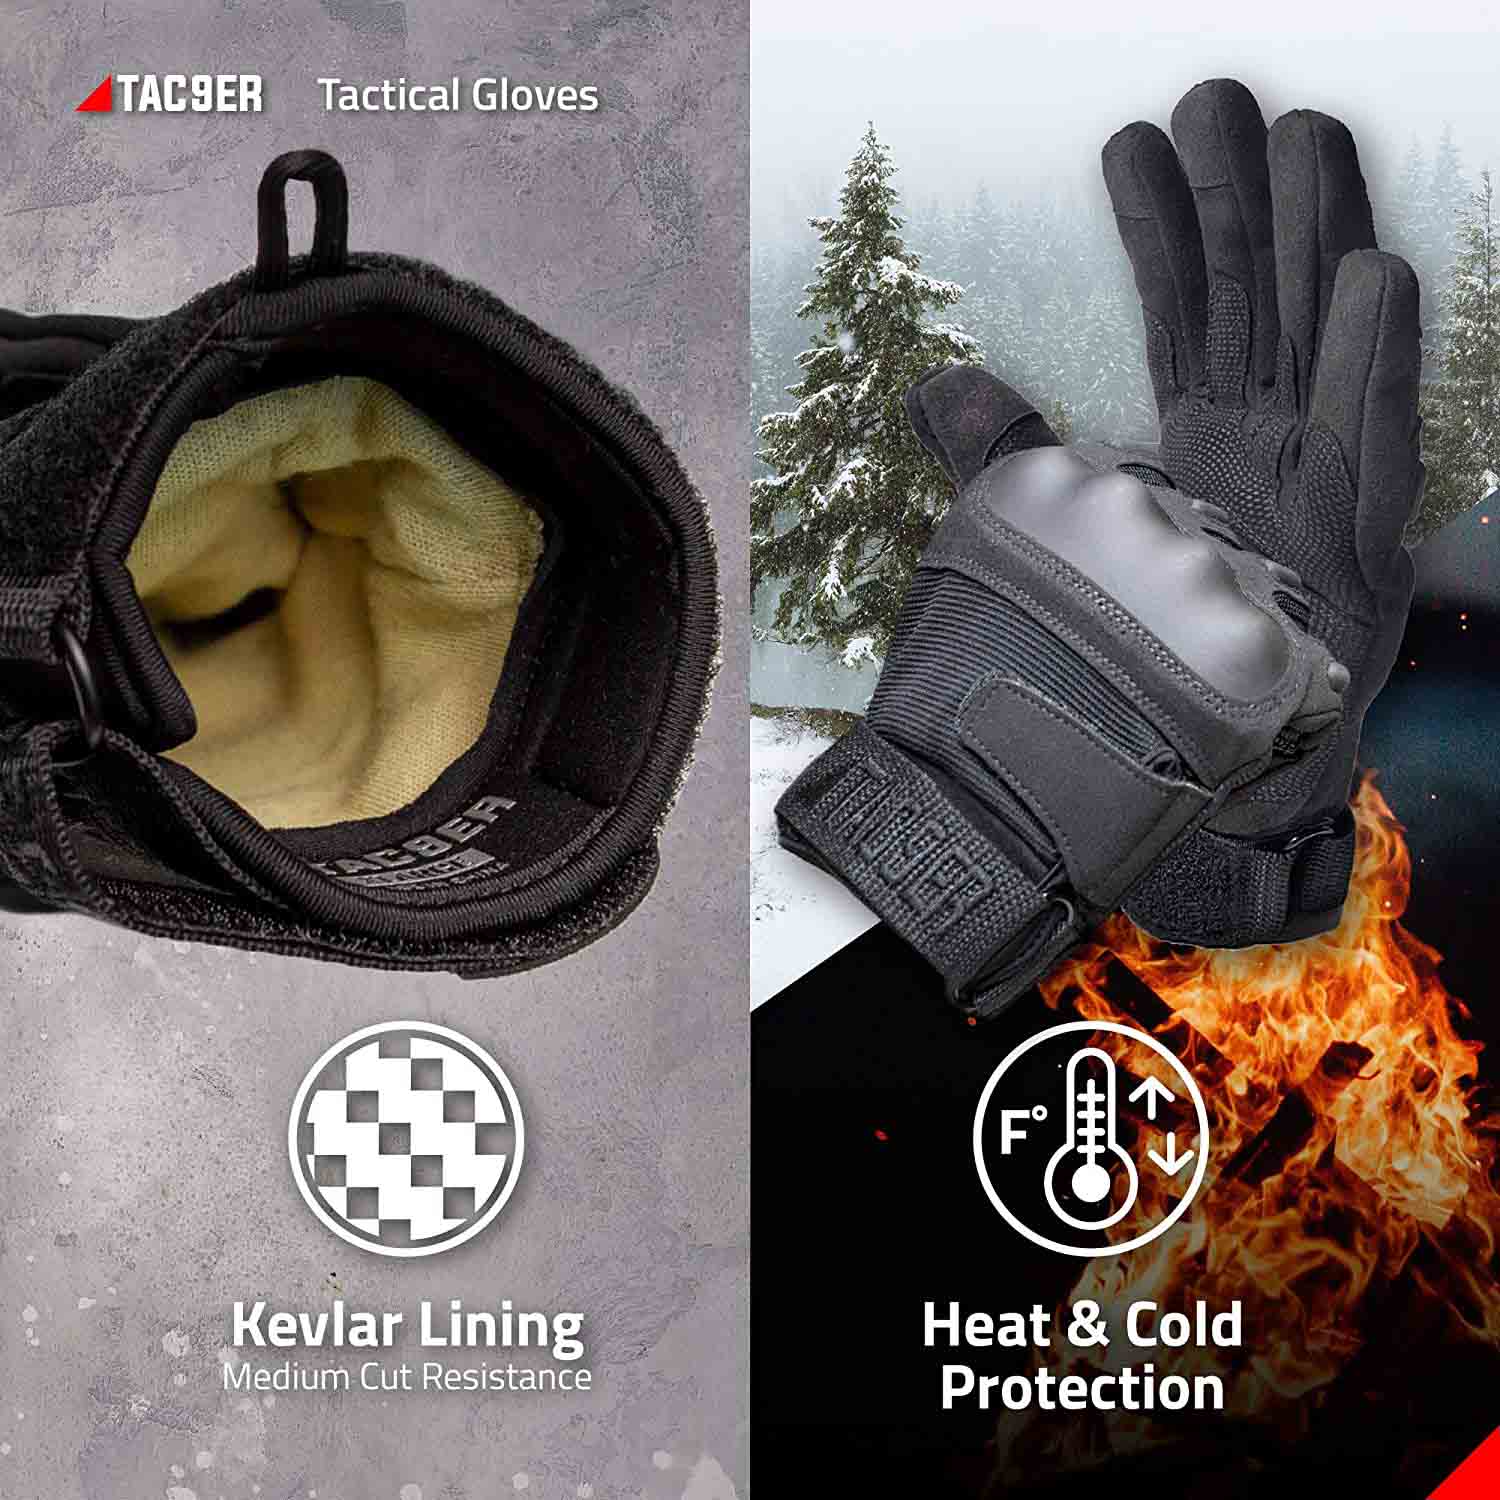 TAC9ER paintball gloves